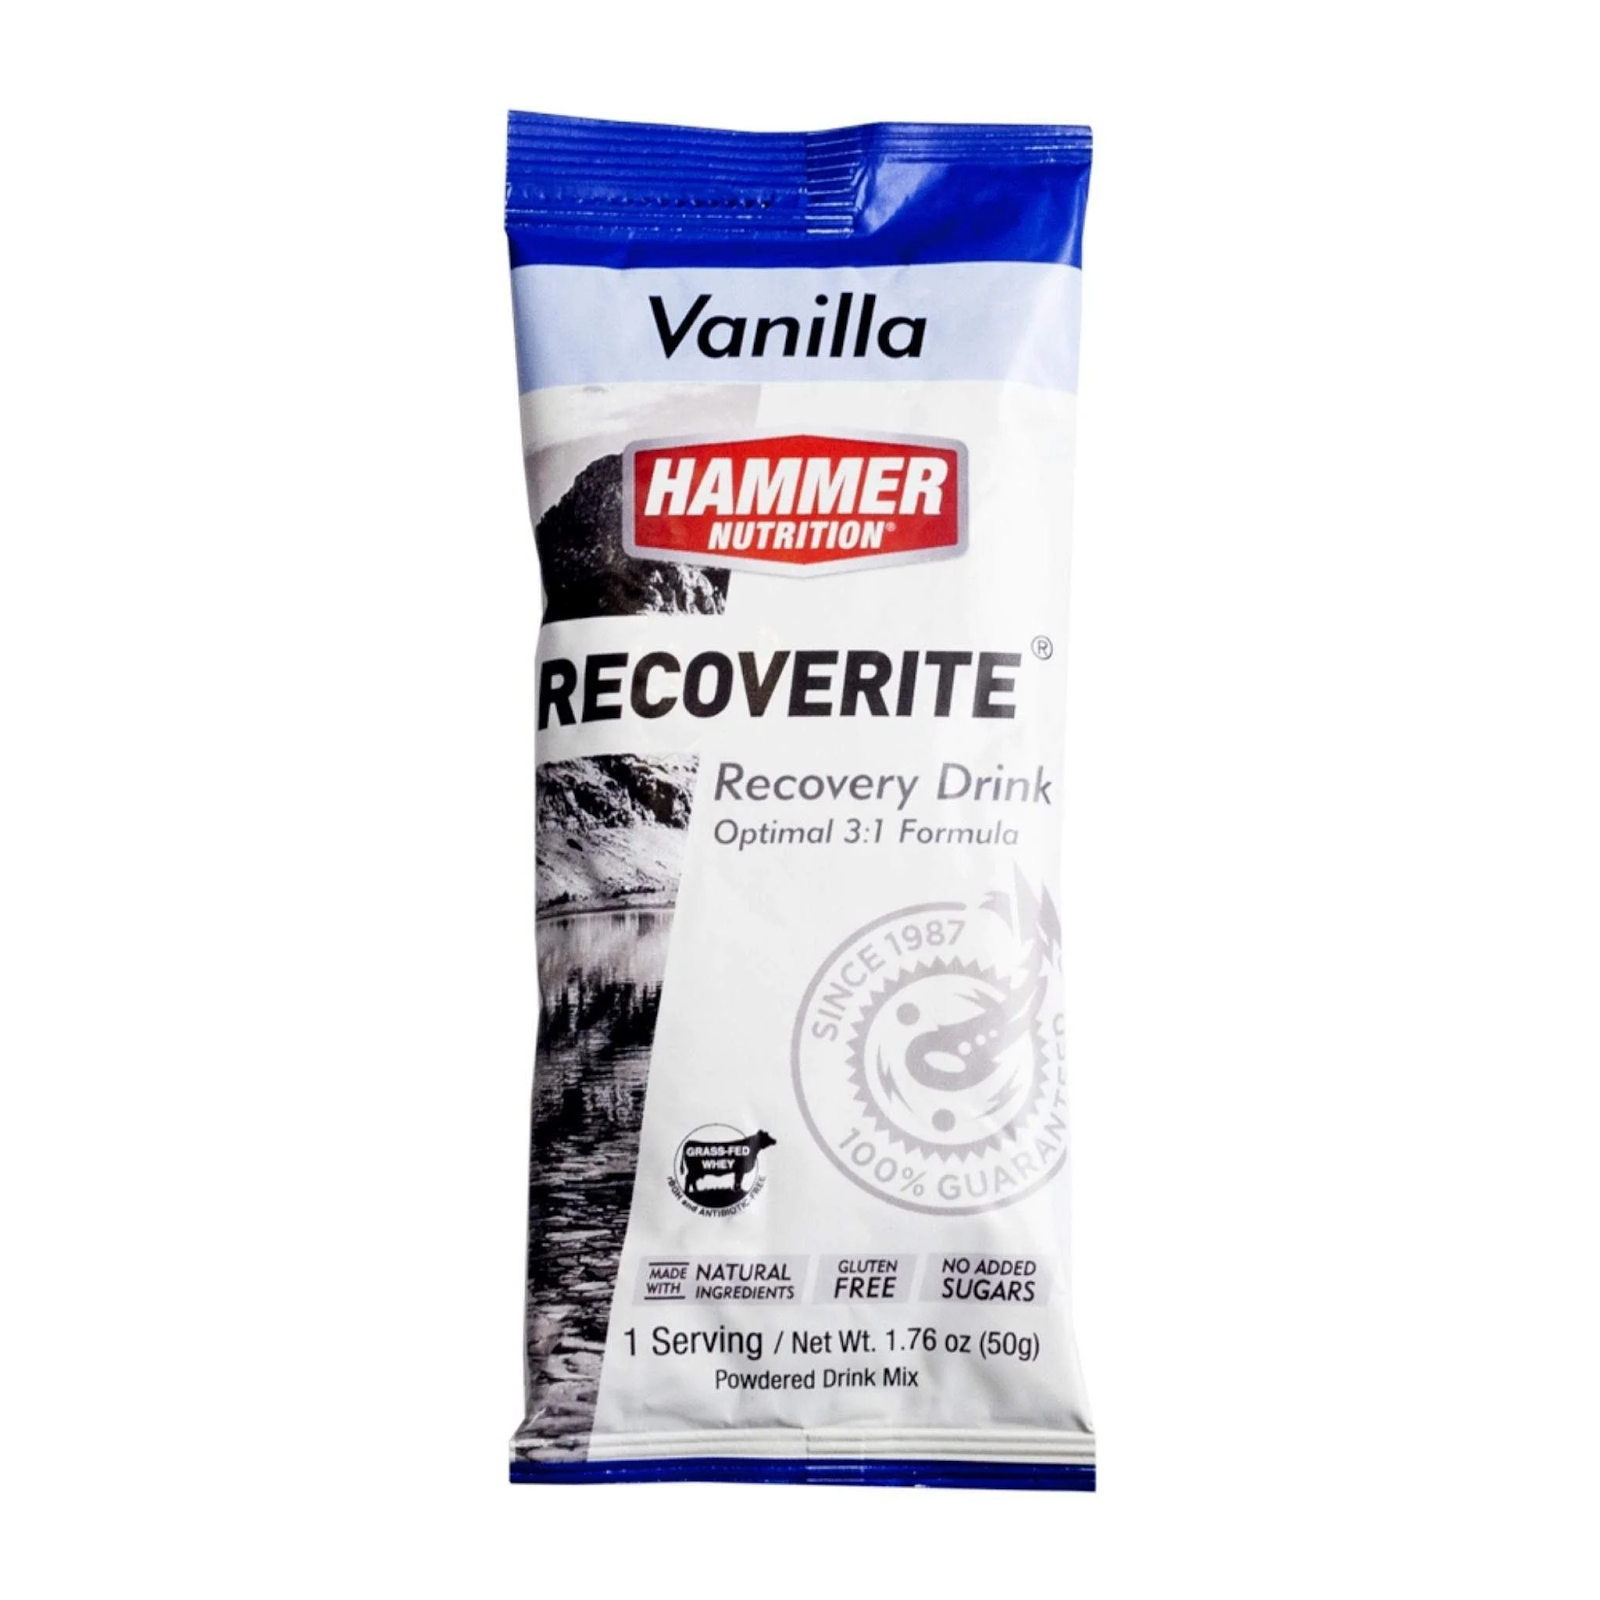 Bột phục hồi Hammer Recoverite - Vanilla - Hương vị thơm ngon, dễ uống
